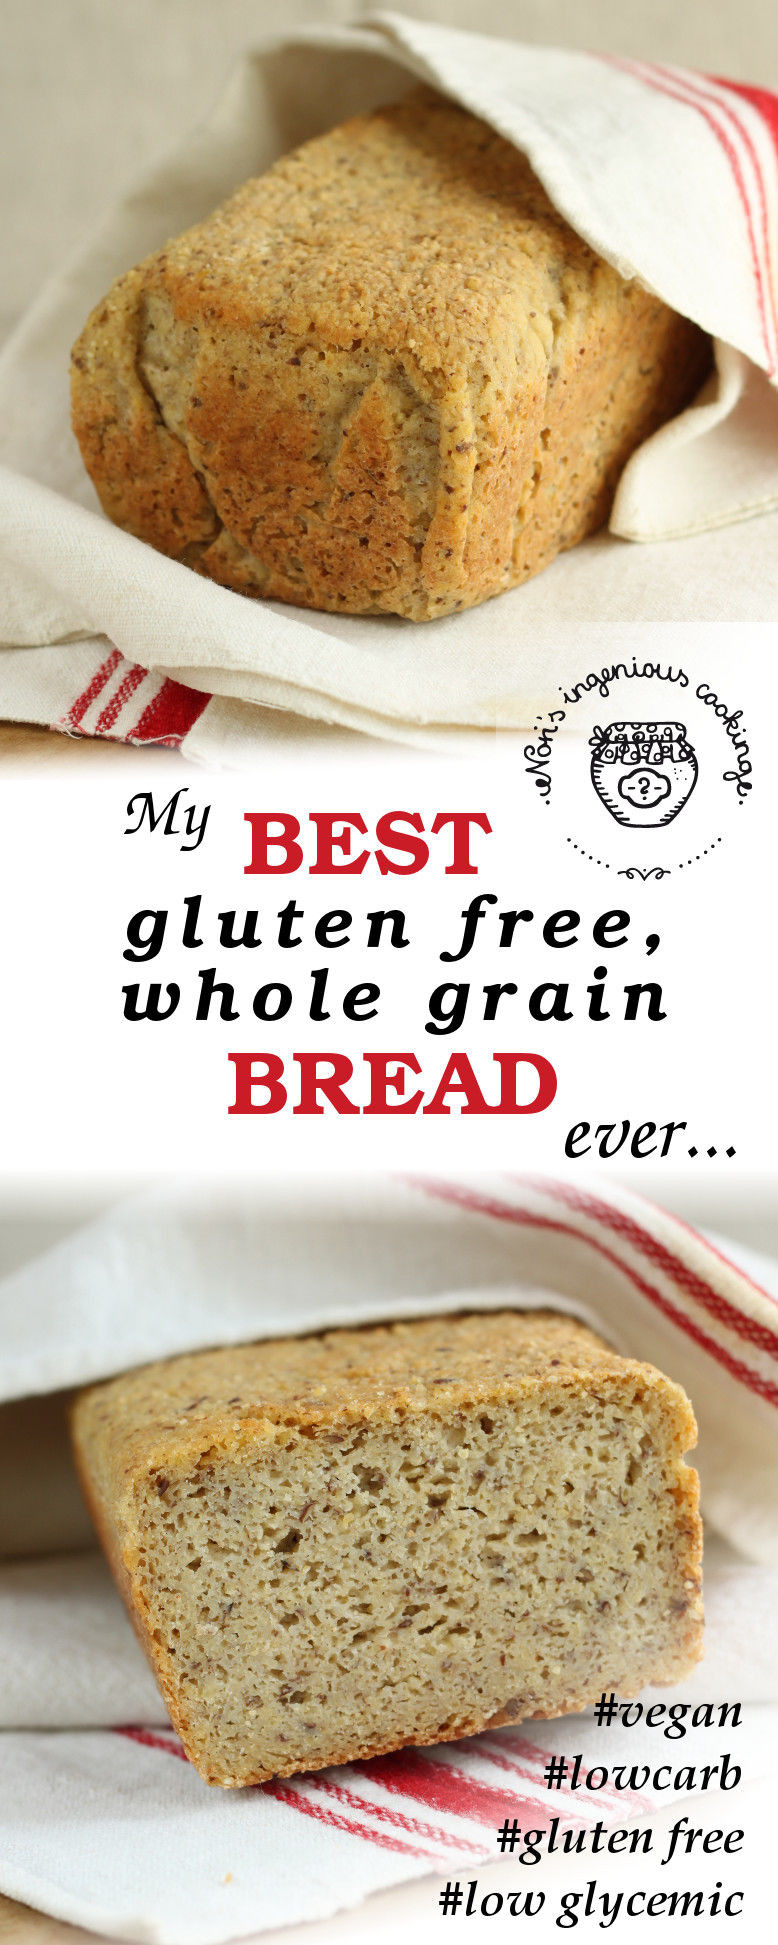 Is Whole Wheat Bread Gluten Free
 My best gluten free whole grain bread ever vegan